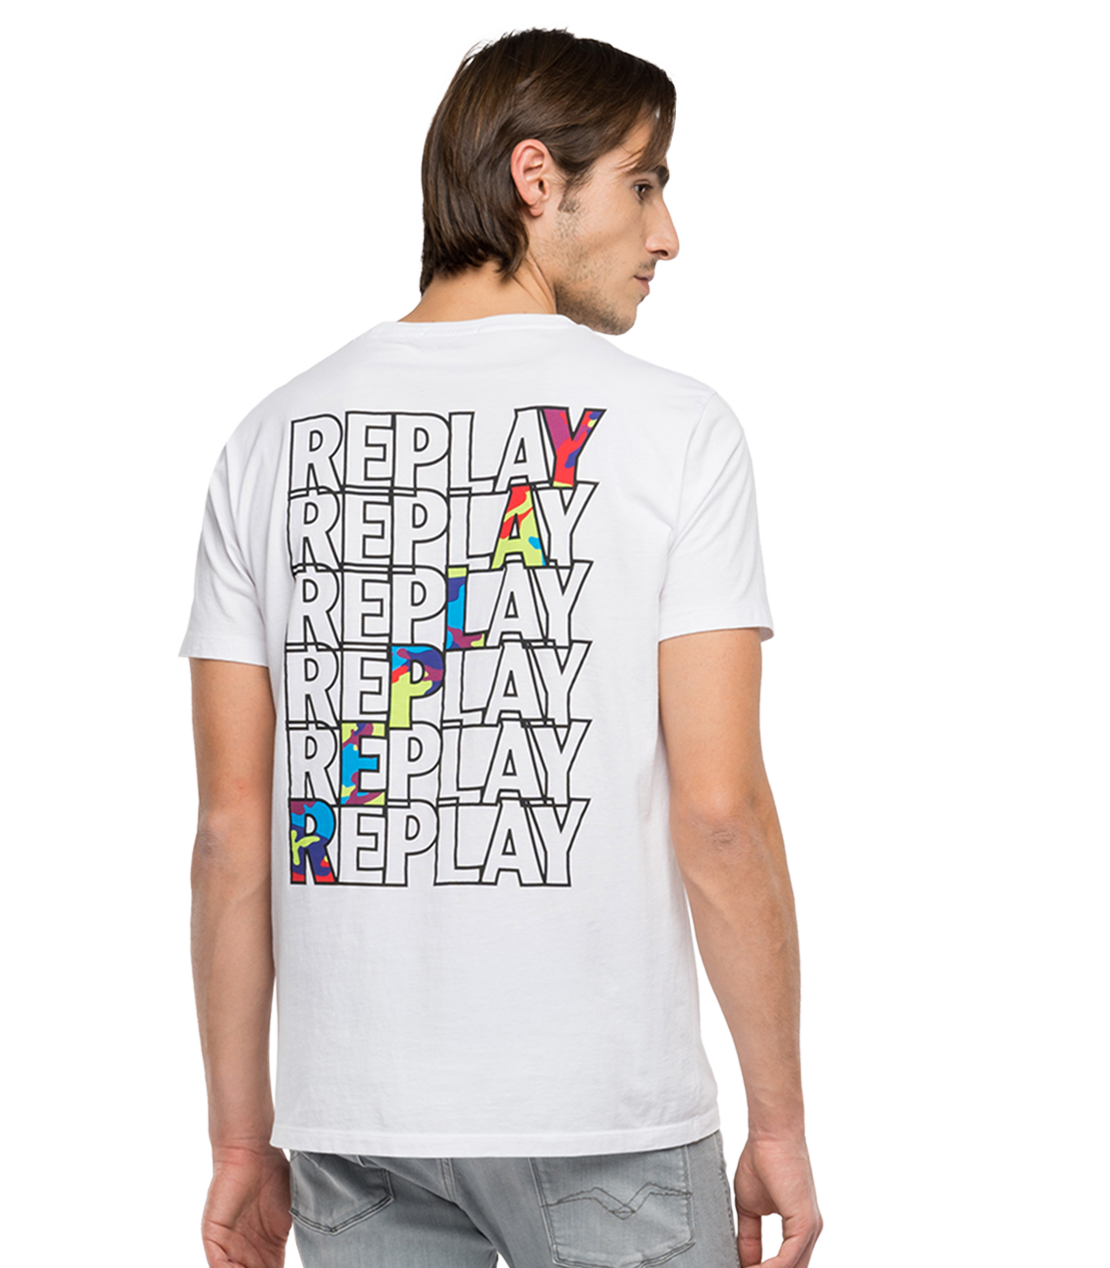 REPLAY リプレイ Tシャツ サイズ:S エンボス ロゴ クルーネック 半袖 Tシャツ M6011.000.2660 ダークブルー 青 白 トップス カットソー 薄手 コットン【メンズ】【美品】